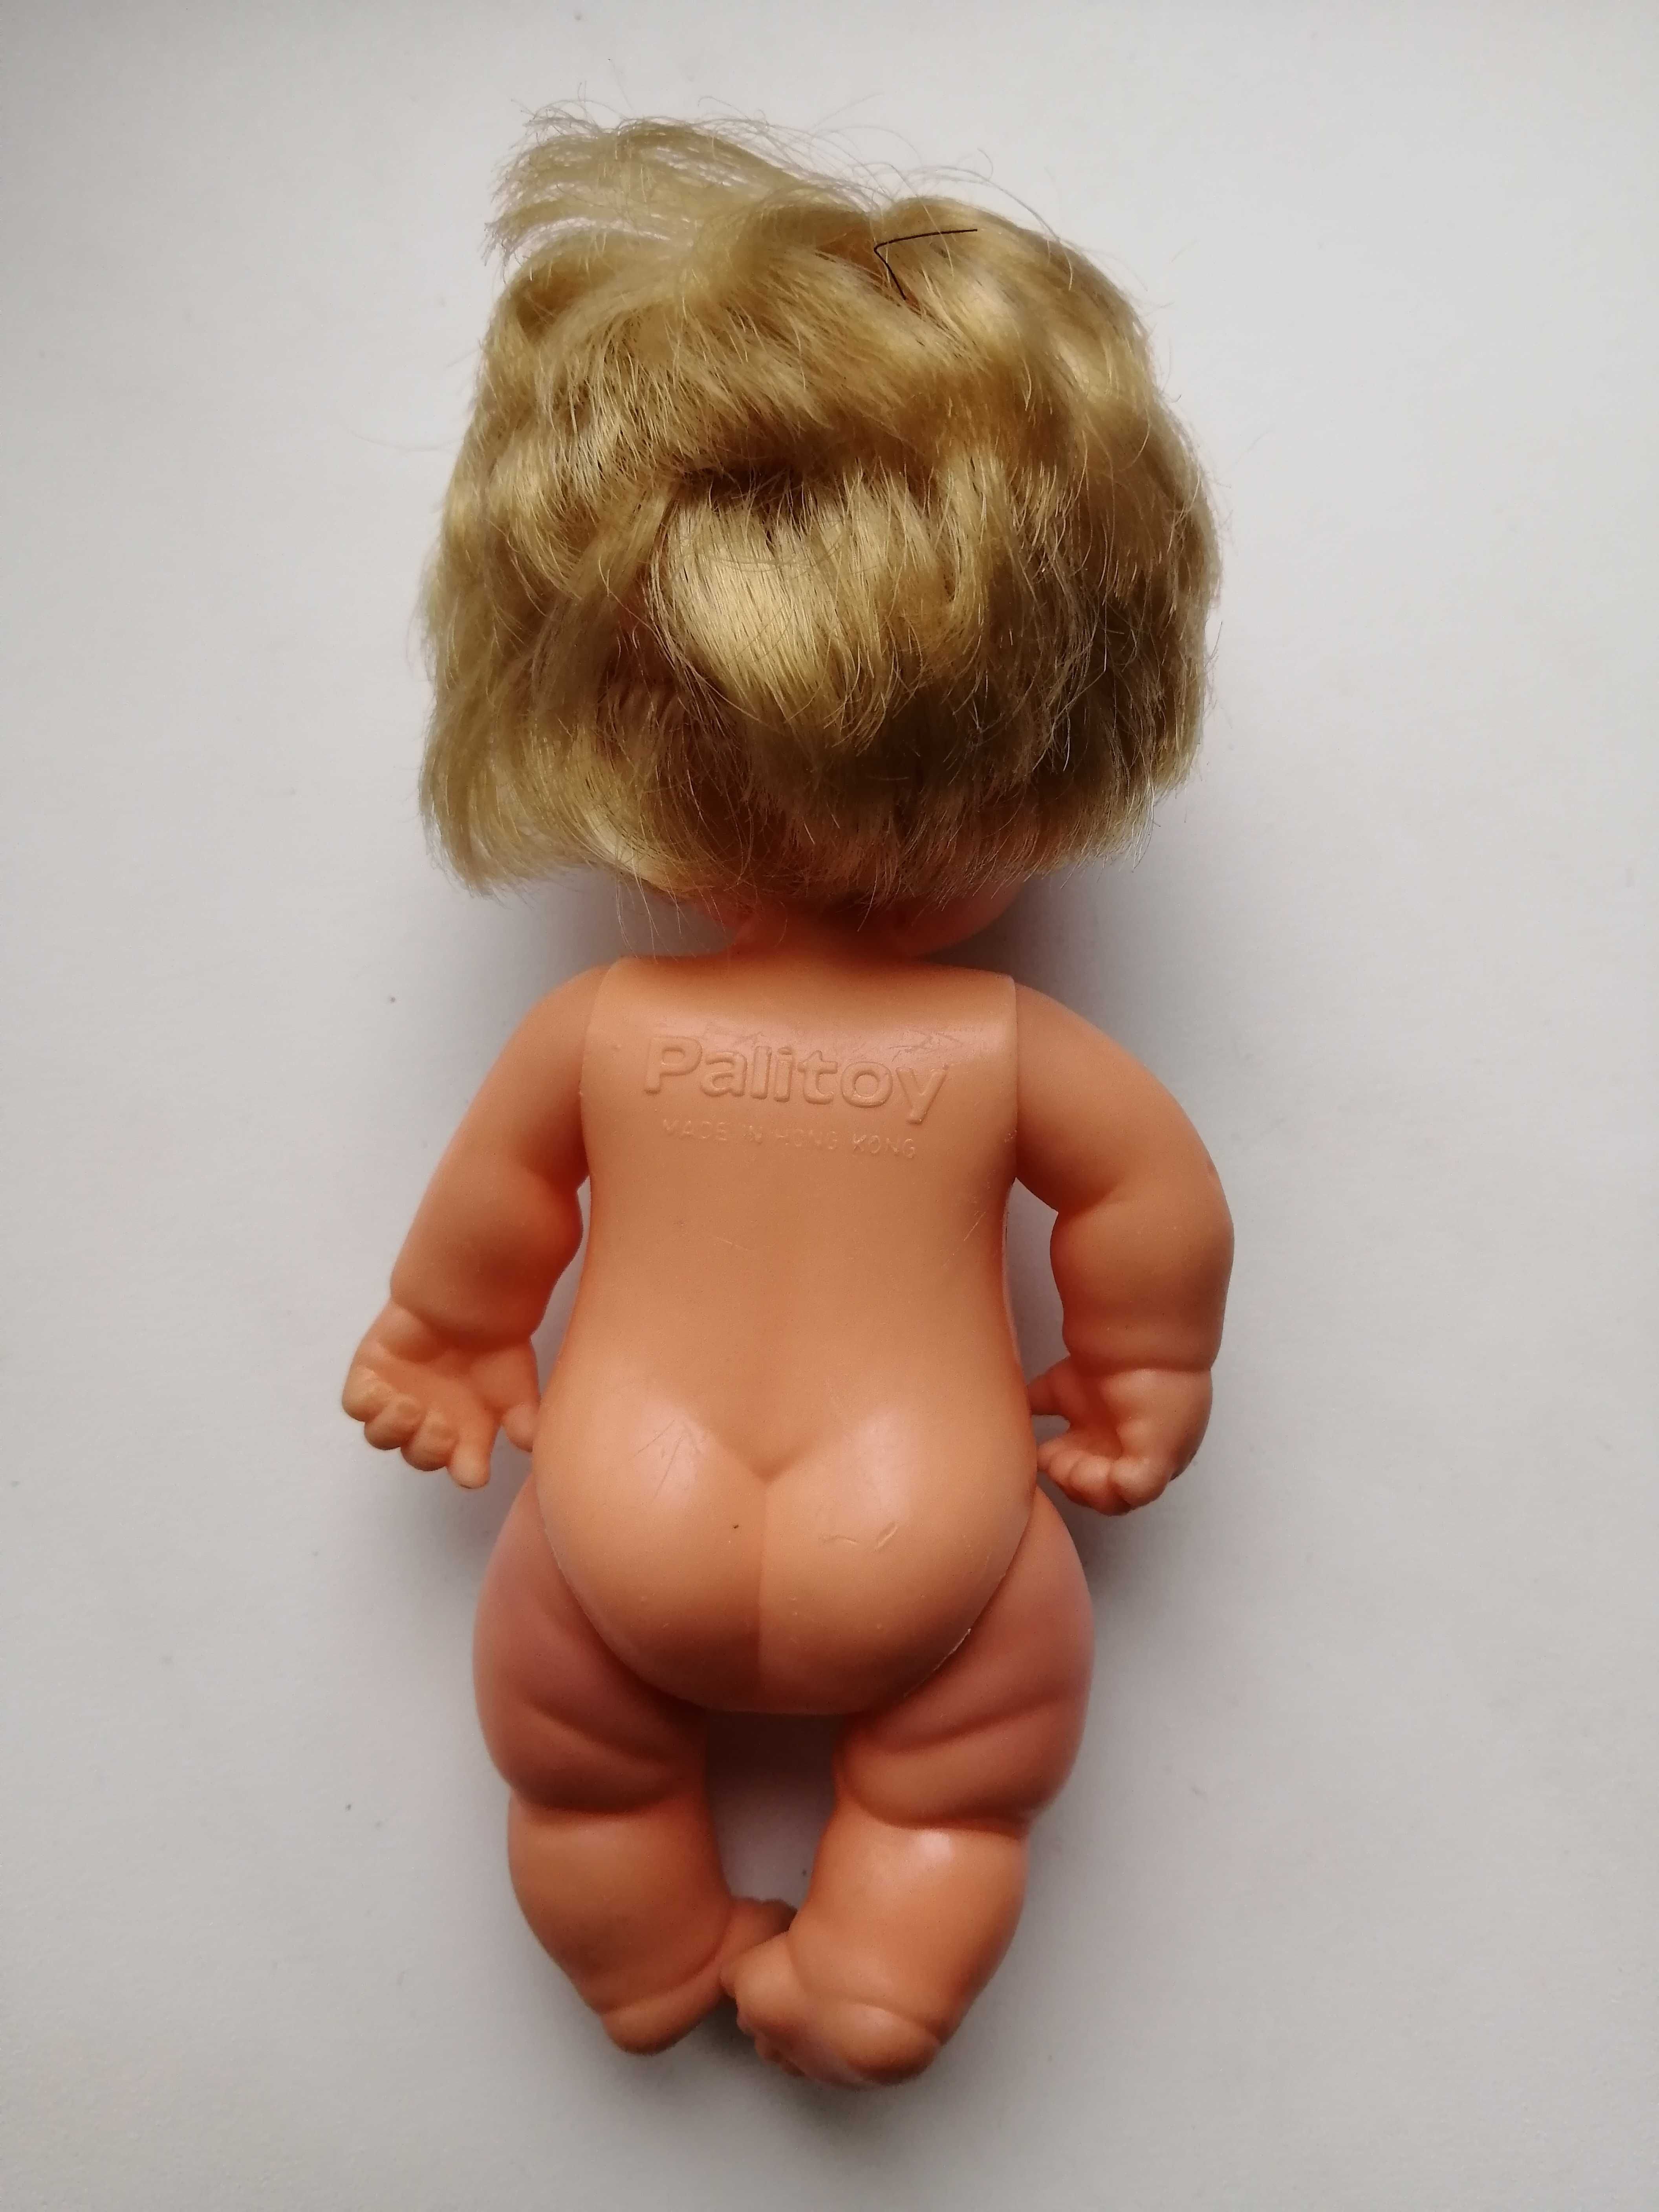 Кукла Palitoy пупсик 15 см винтажный мальчик лялька мини